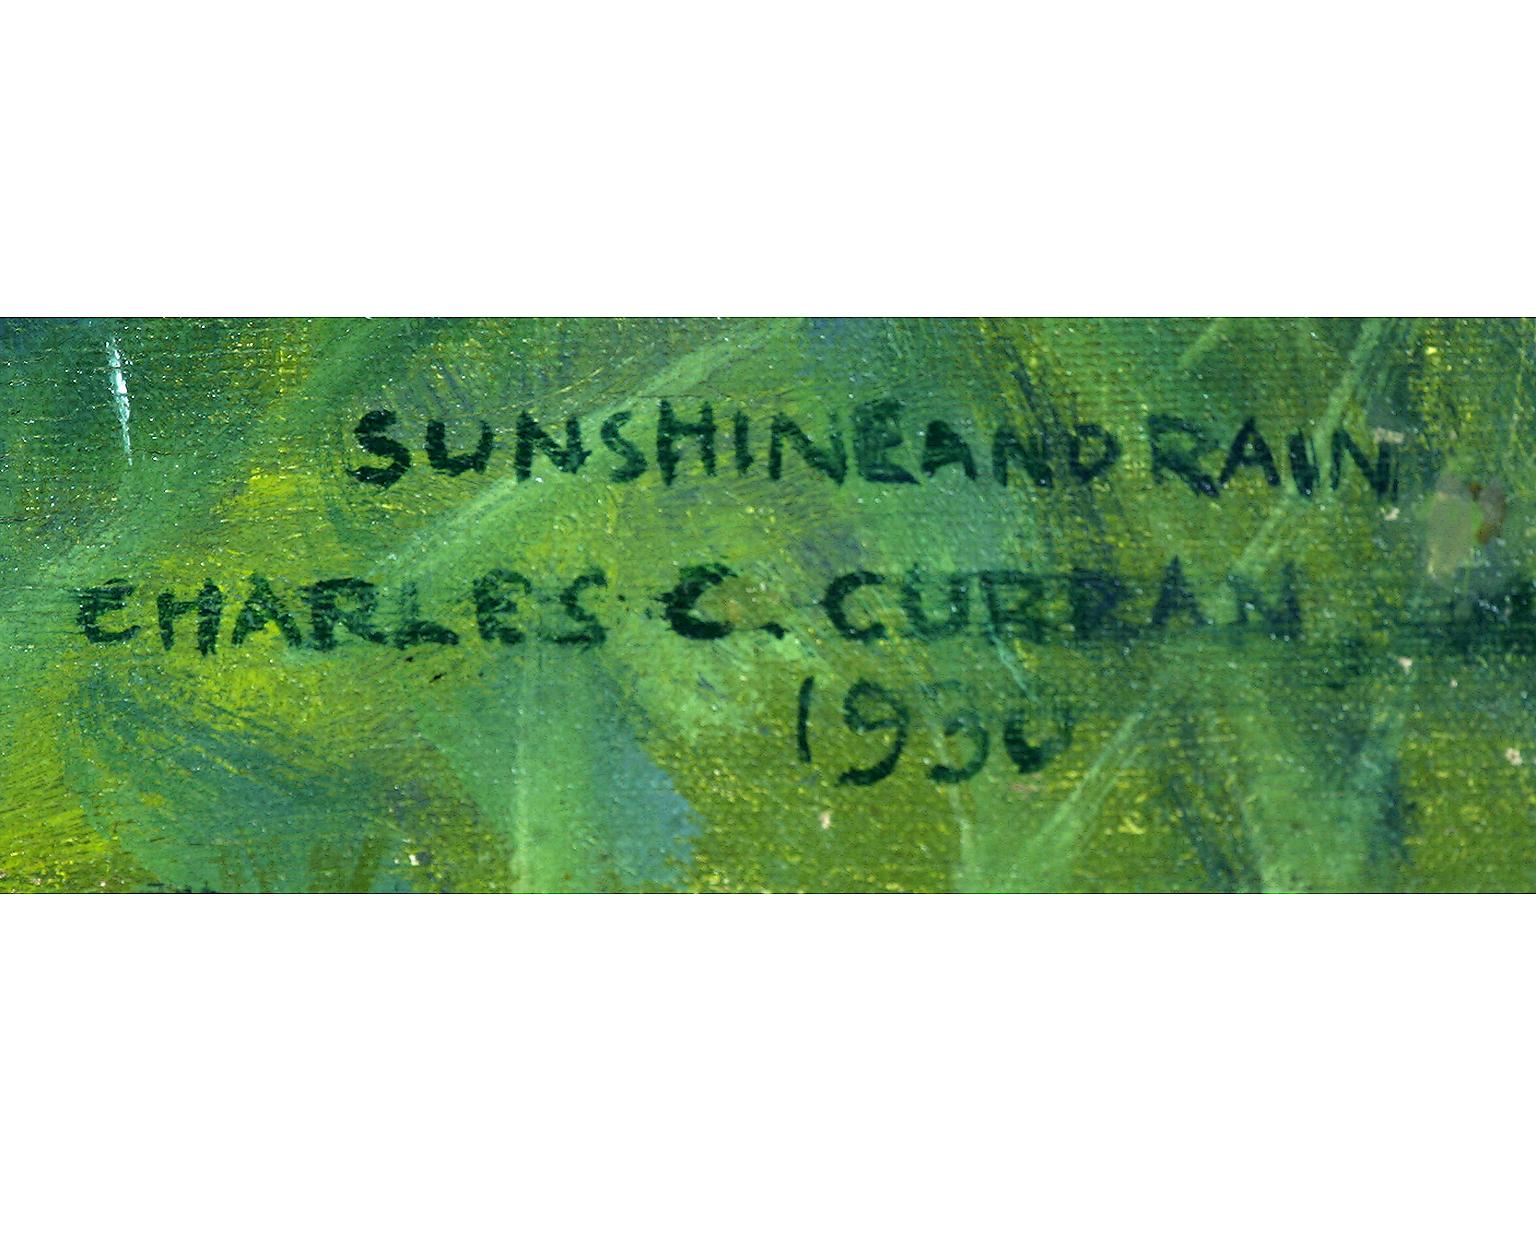 Sonnenschein und Regen, Halbakt Frauen in fröhlichem Moment – Painting von Charles Courtney Curran